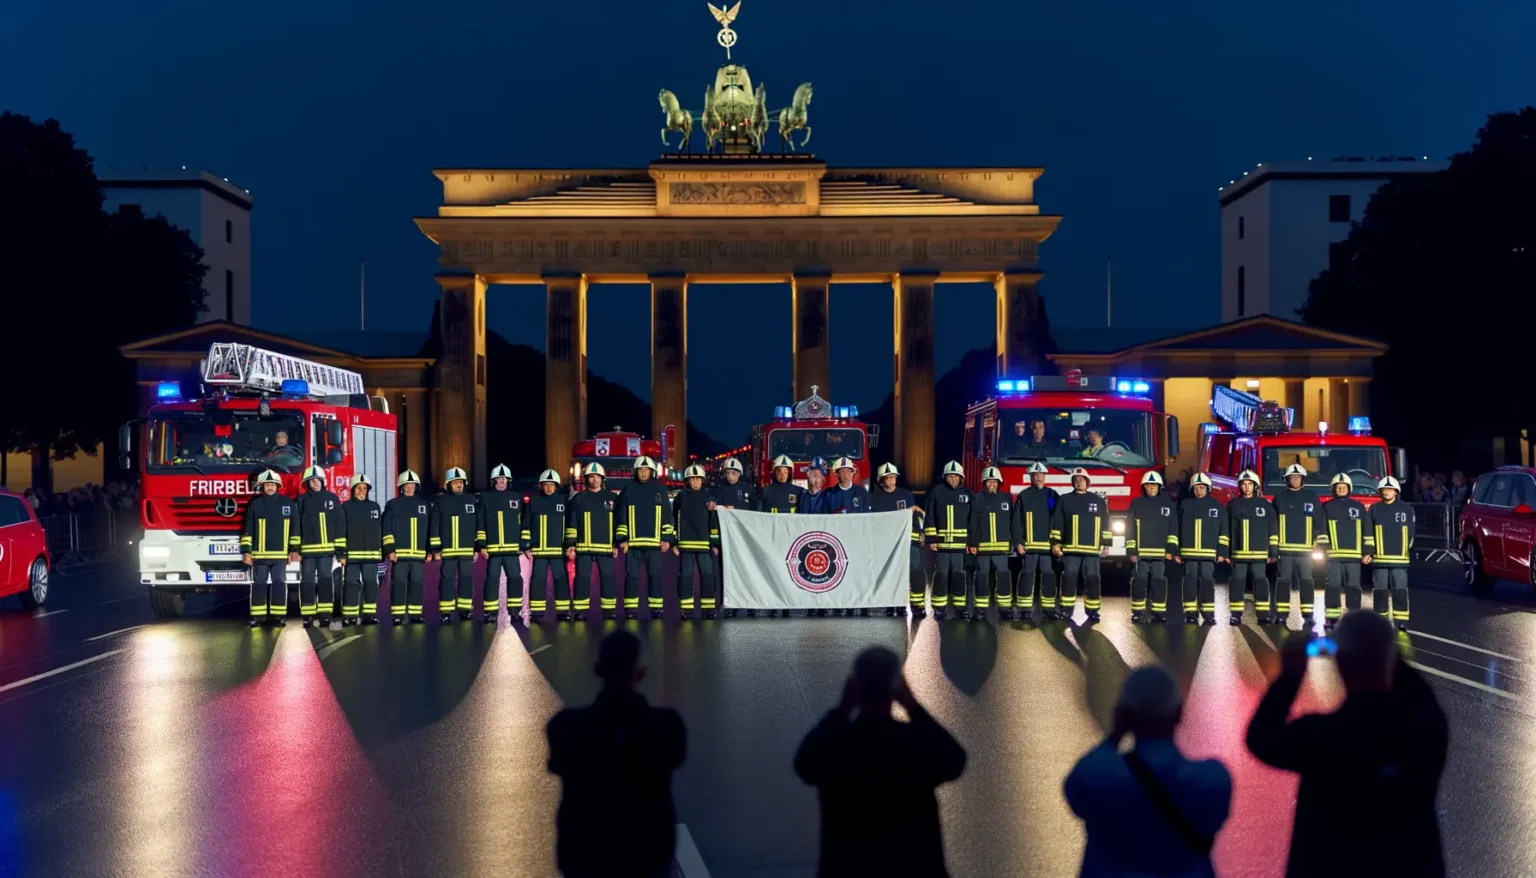 Feuerwehrleute in Uniform stehen in einer Reihe vor dem Brandenburger Tor in Berlin und halten ein Banner, während Menschen Fotos machen. Mehrere Feuerwehrfahrzeuge sind im Hintergrund mit eingeschalteten Blaulichtern positioniert. Es scheint eine nächtliche Veranstaltung oder Zeremonie zu sein.